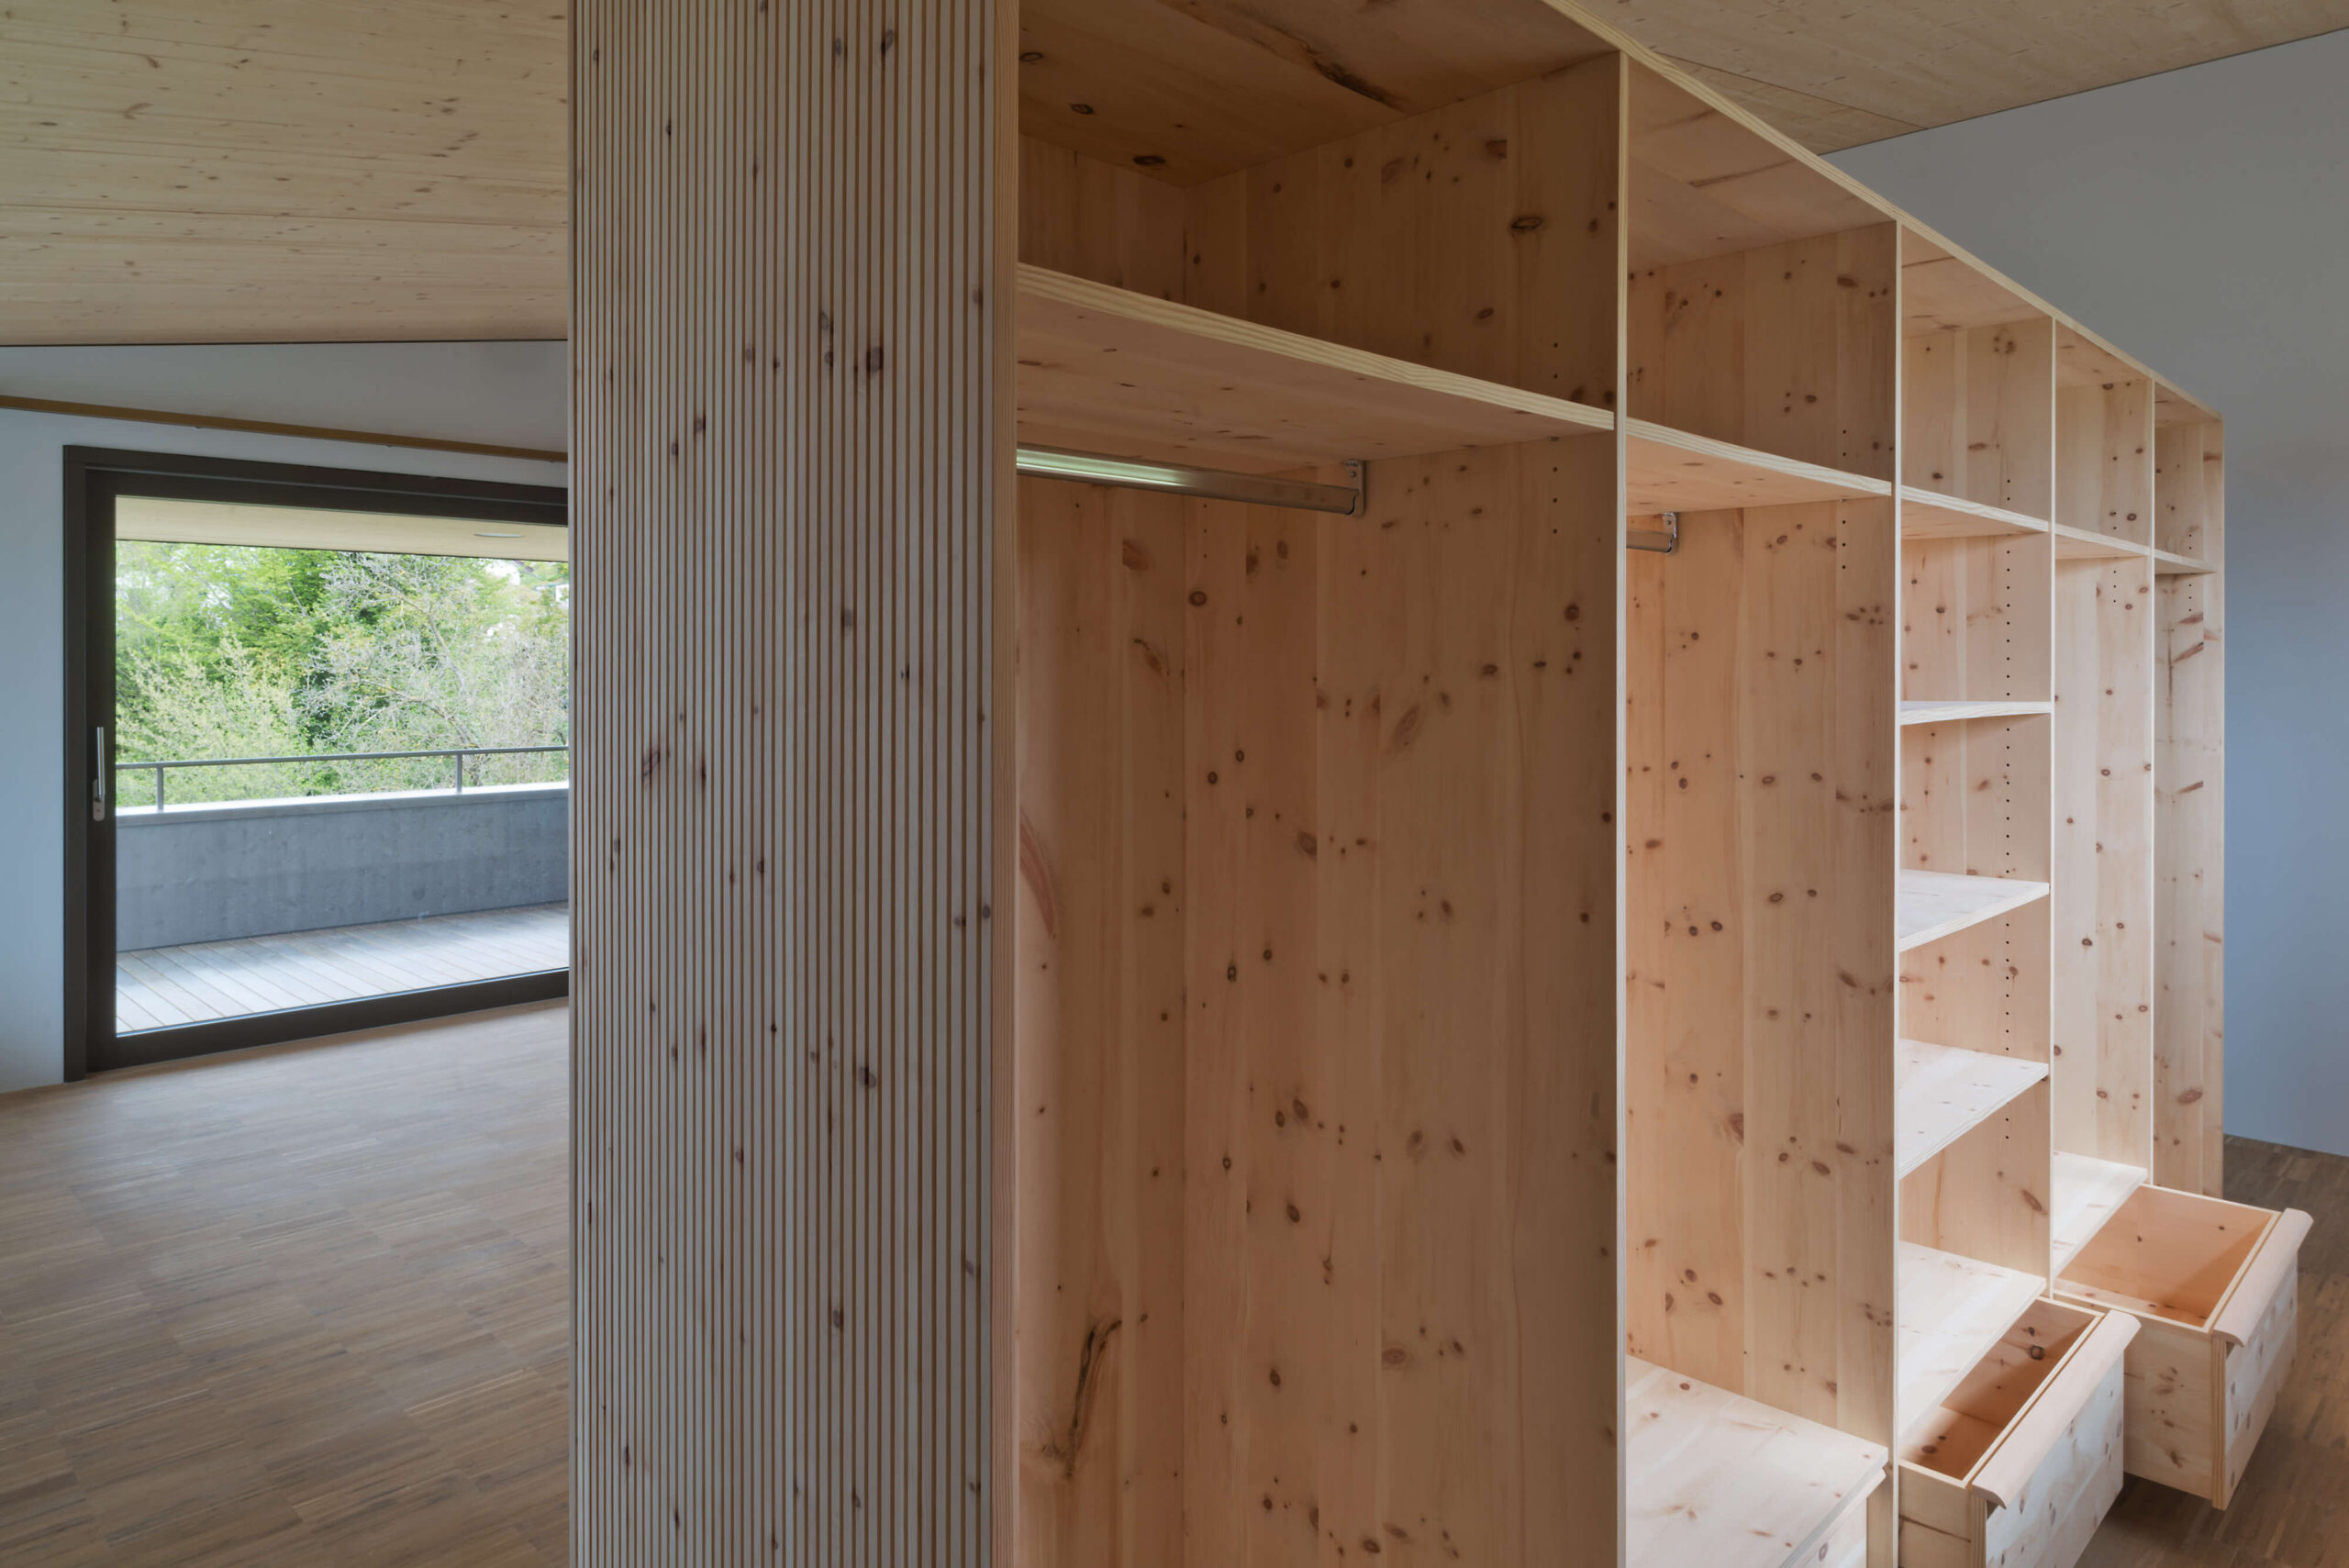 Privathaus Ostschweiz: Innenausbau Schlafzimmer mit Arvenankleide und einem Sideboard in massiver Ulme, durchgeführt von der Schreinerei Eigenmann AG